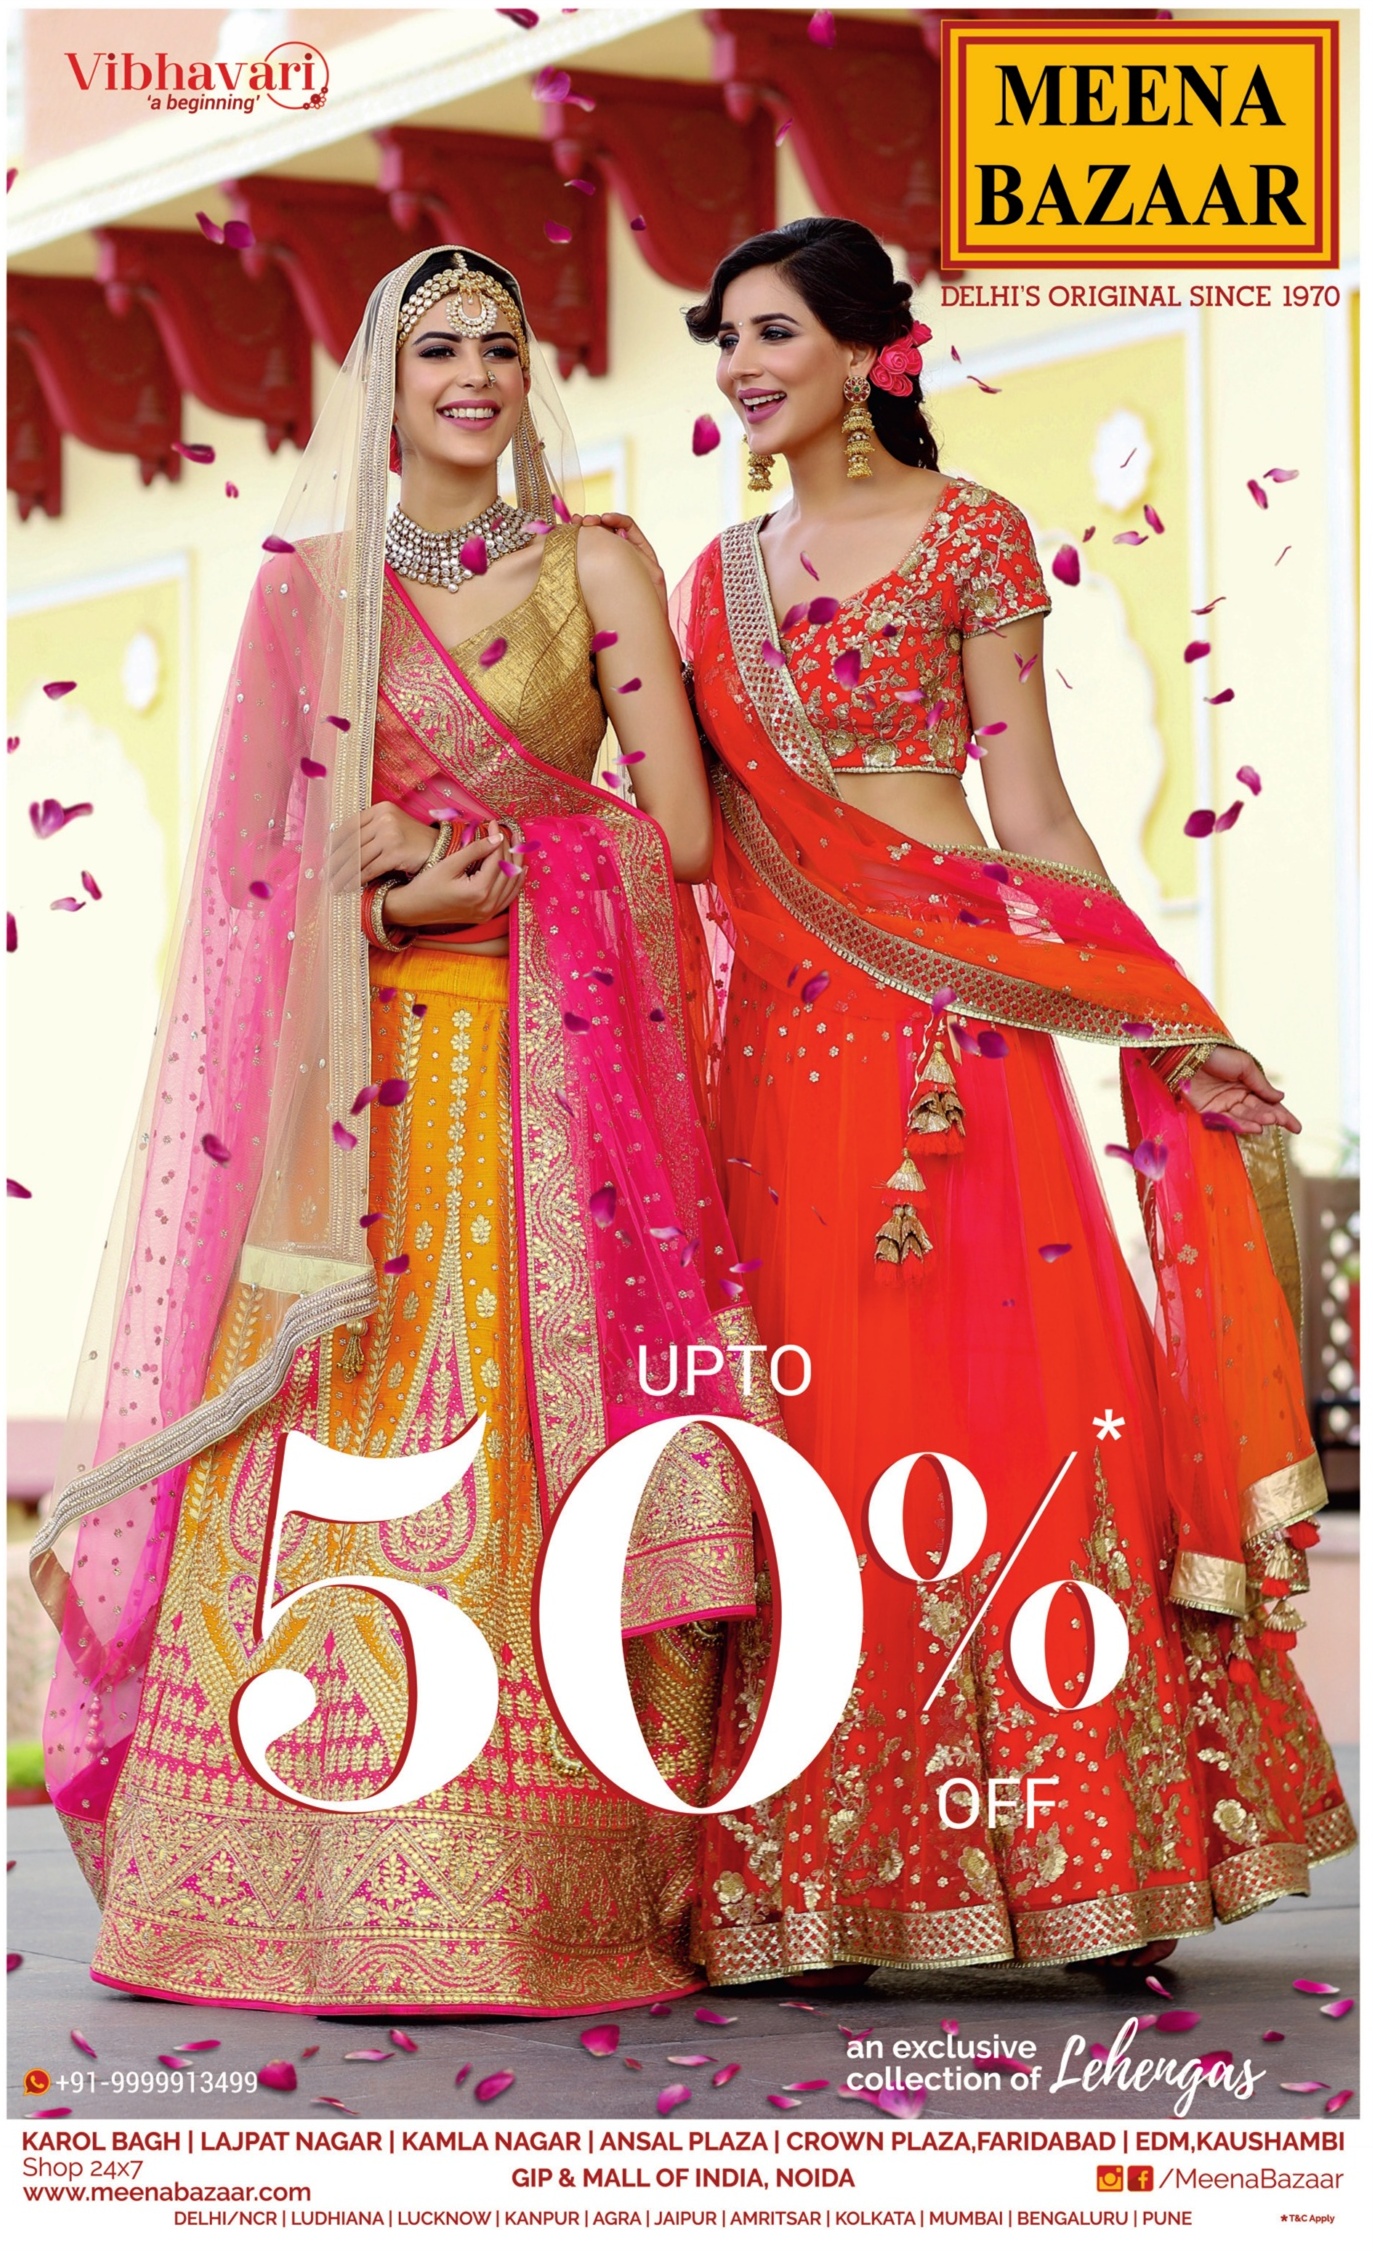 Meena Bazaar - Buy Meena Bazaar Clothing Online in India | Myntra